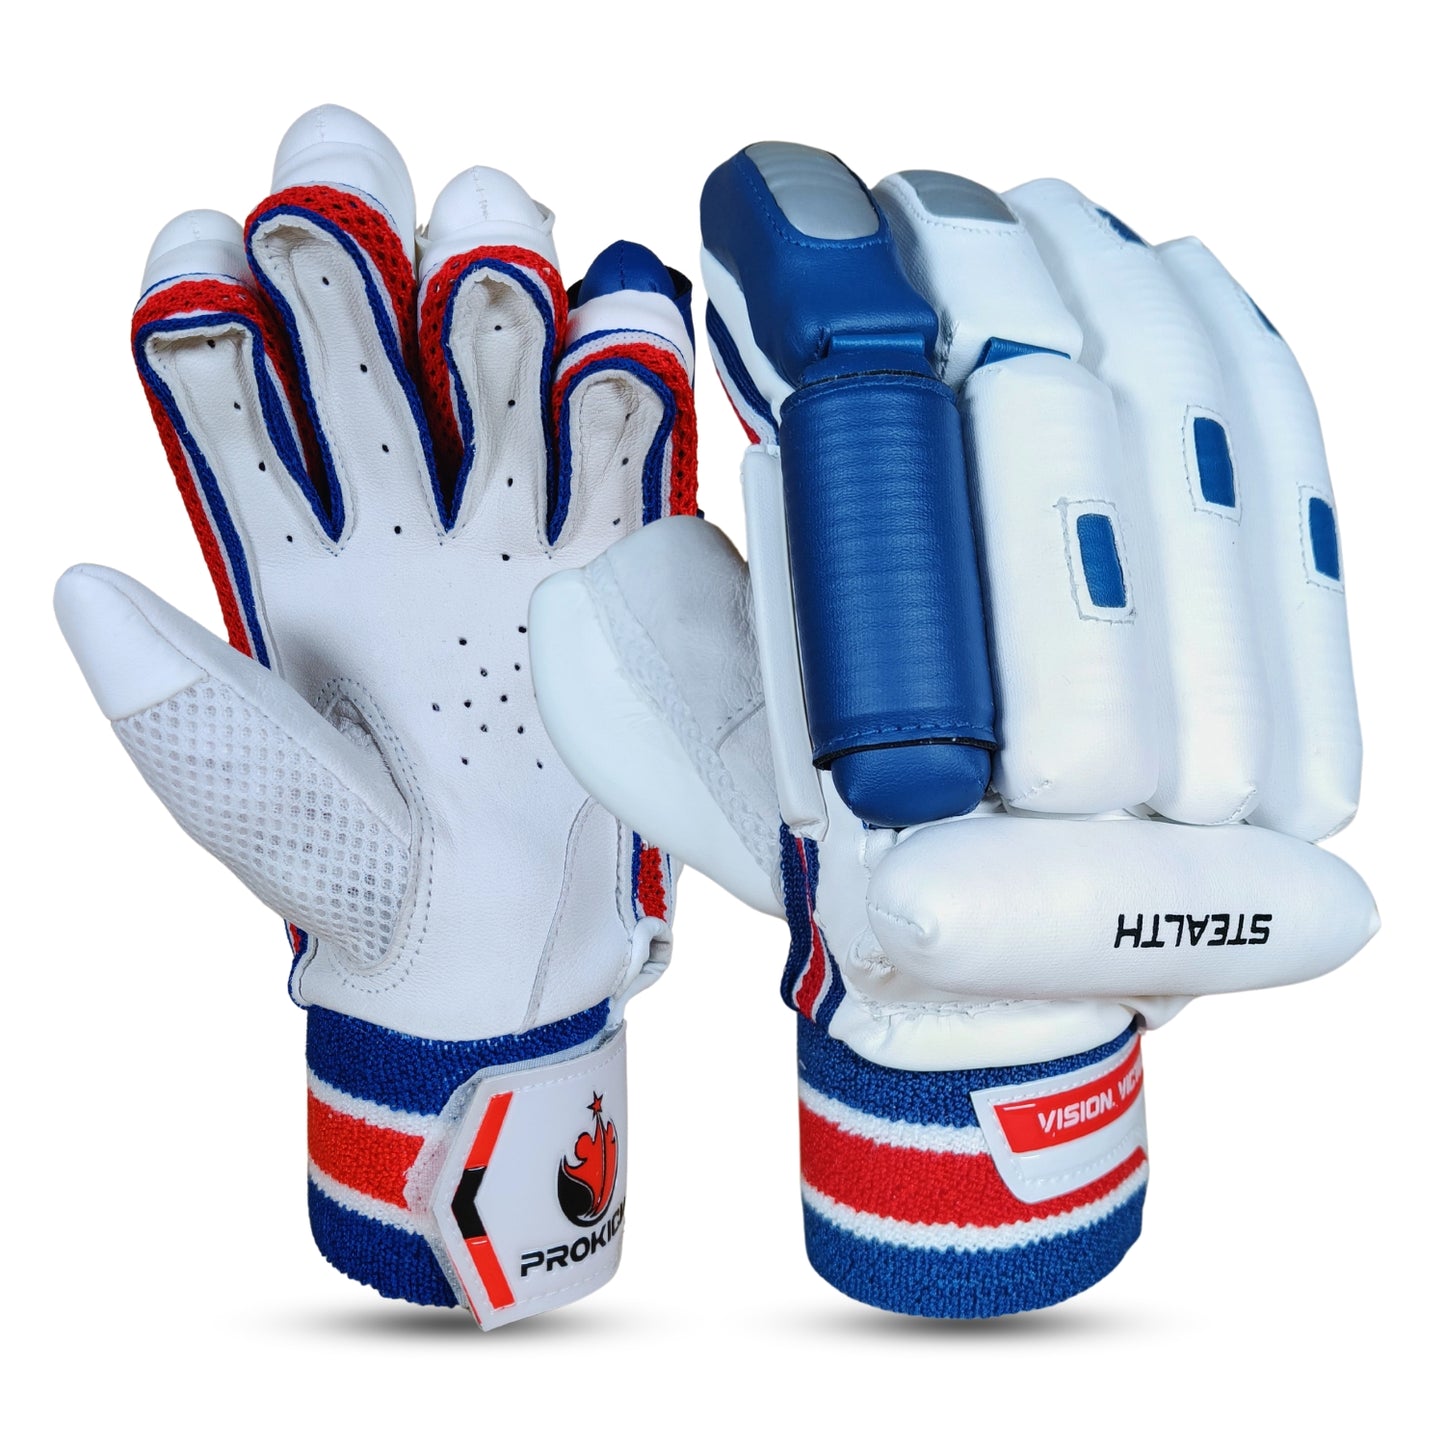 Prokick Stealth LH Cricket Batting Gloves - Best Price online Prokicksports.com